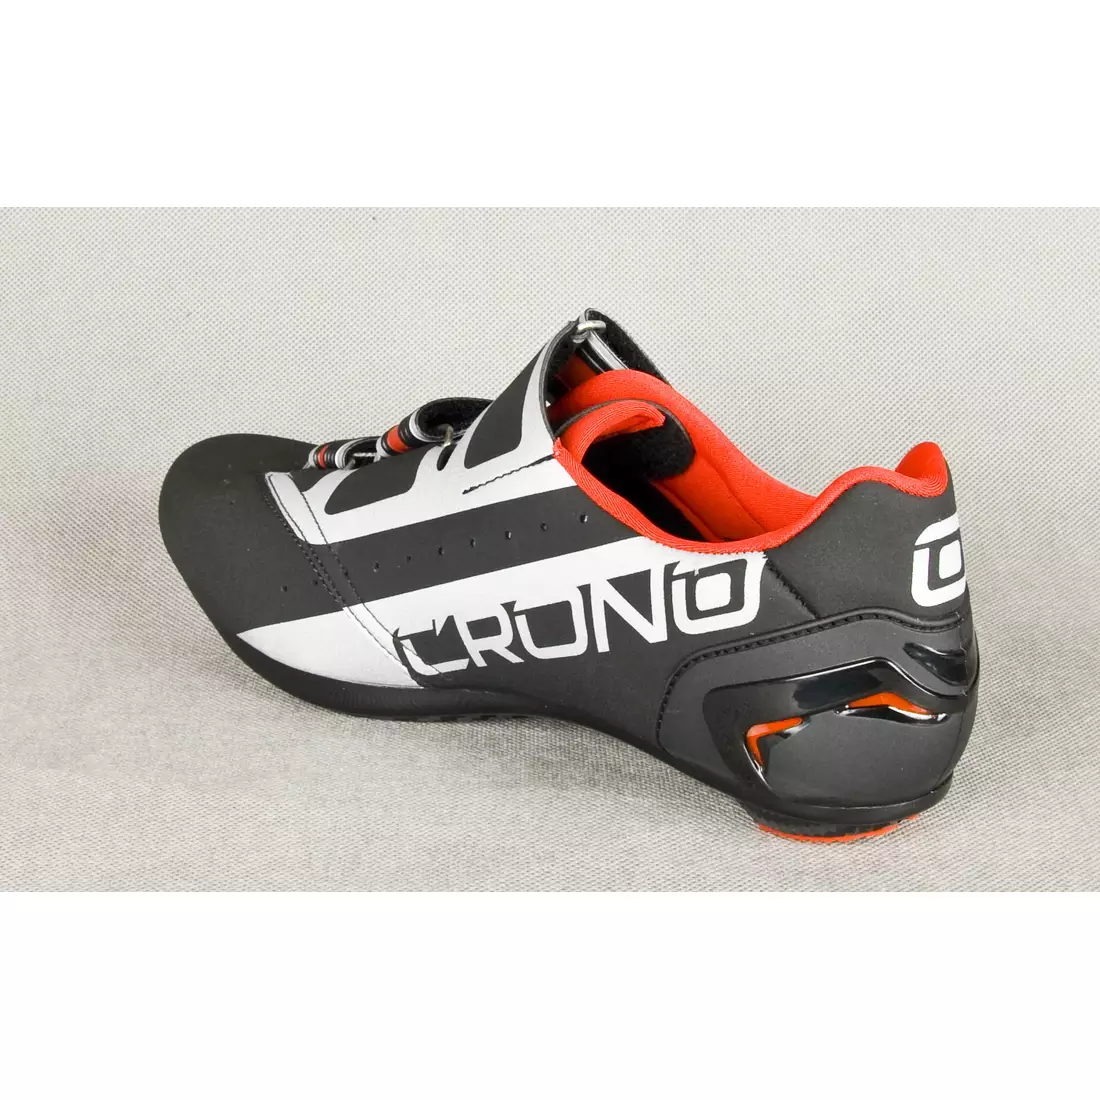 CRONO CR-4 NYLON cestná cyklistická obuv, čierna